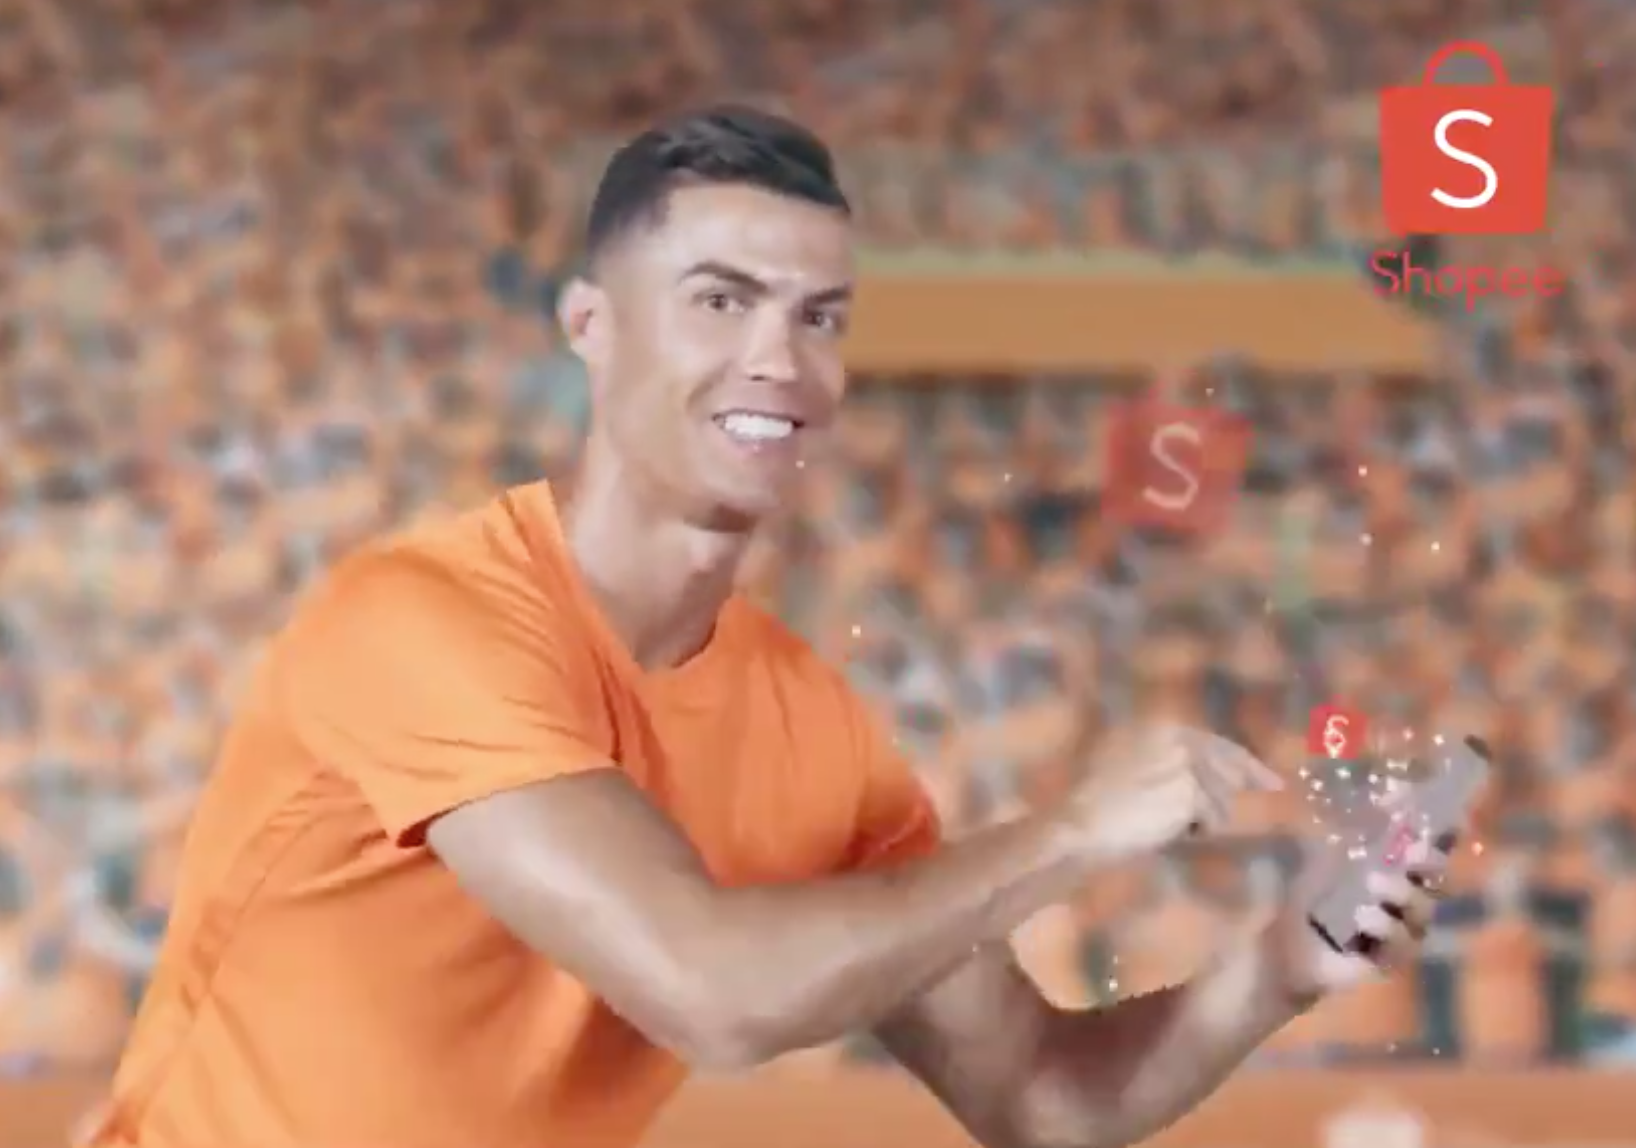 😂 Роналду танцует в азиатской рекламе онлайн-магазинов. Смешно и очень странно